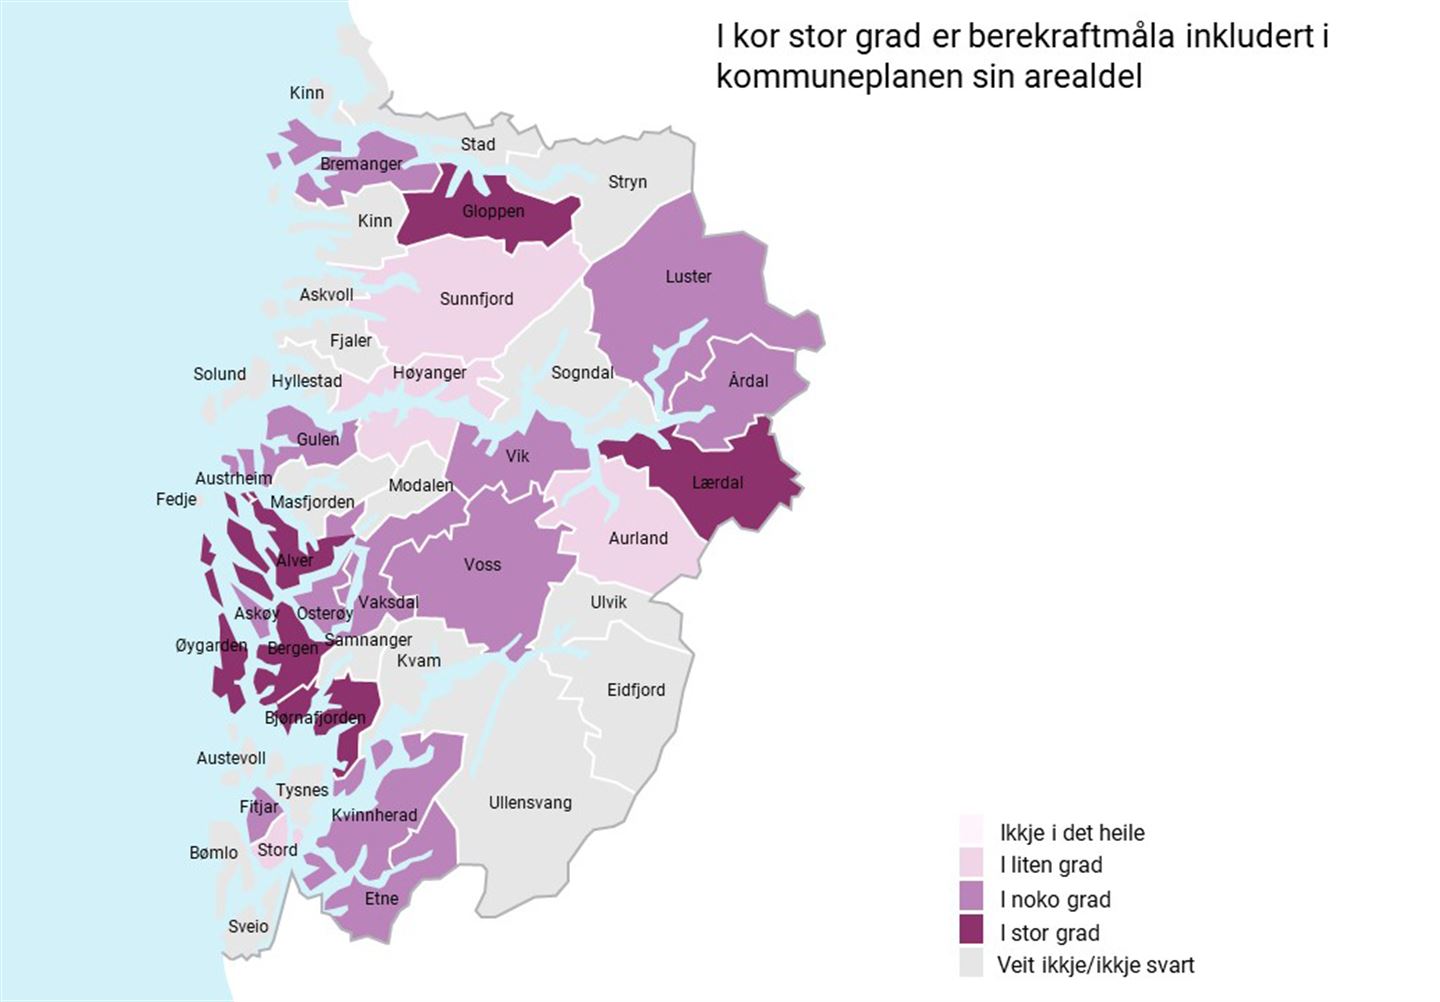 Kart av Vestland med kommunane fargelagt i lilla farge i ulike nyanser basert i kor stor grad berekraftsmåla er inkludert i kommuneplanens arealdel.